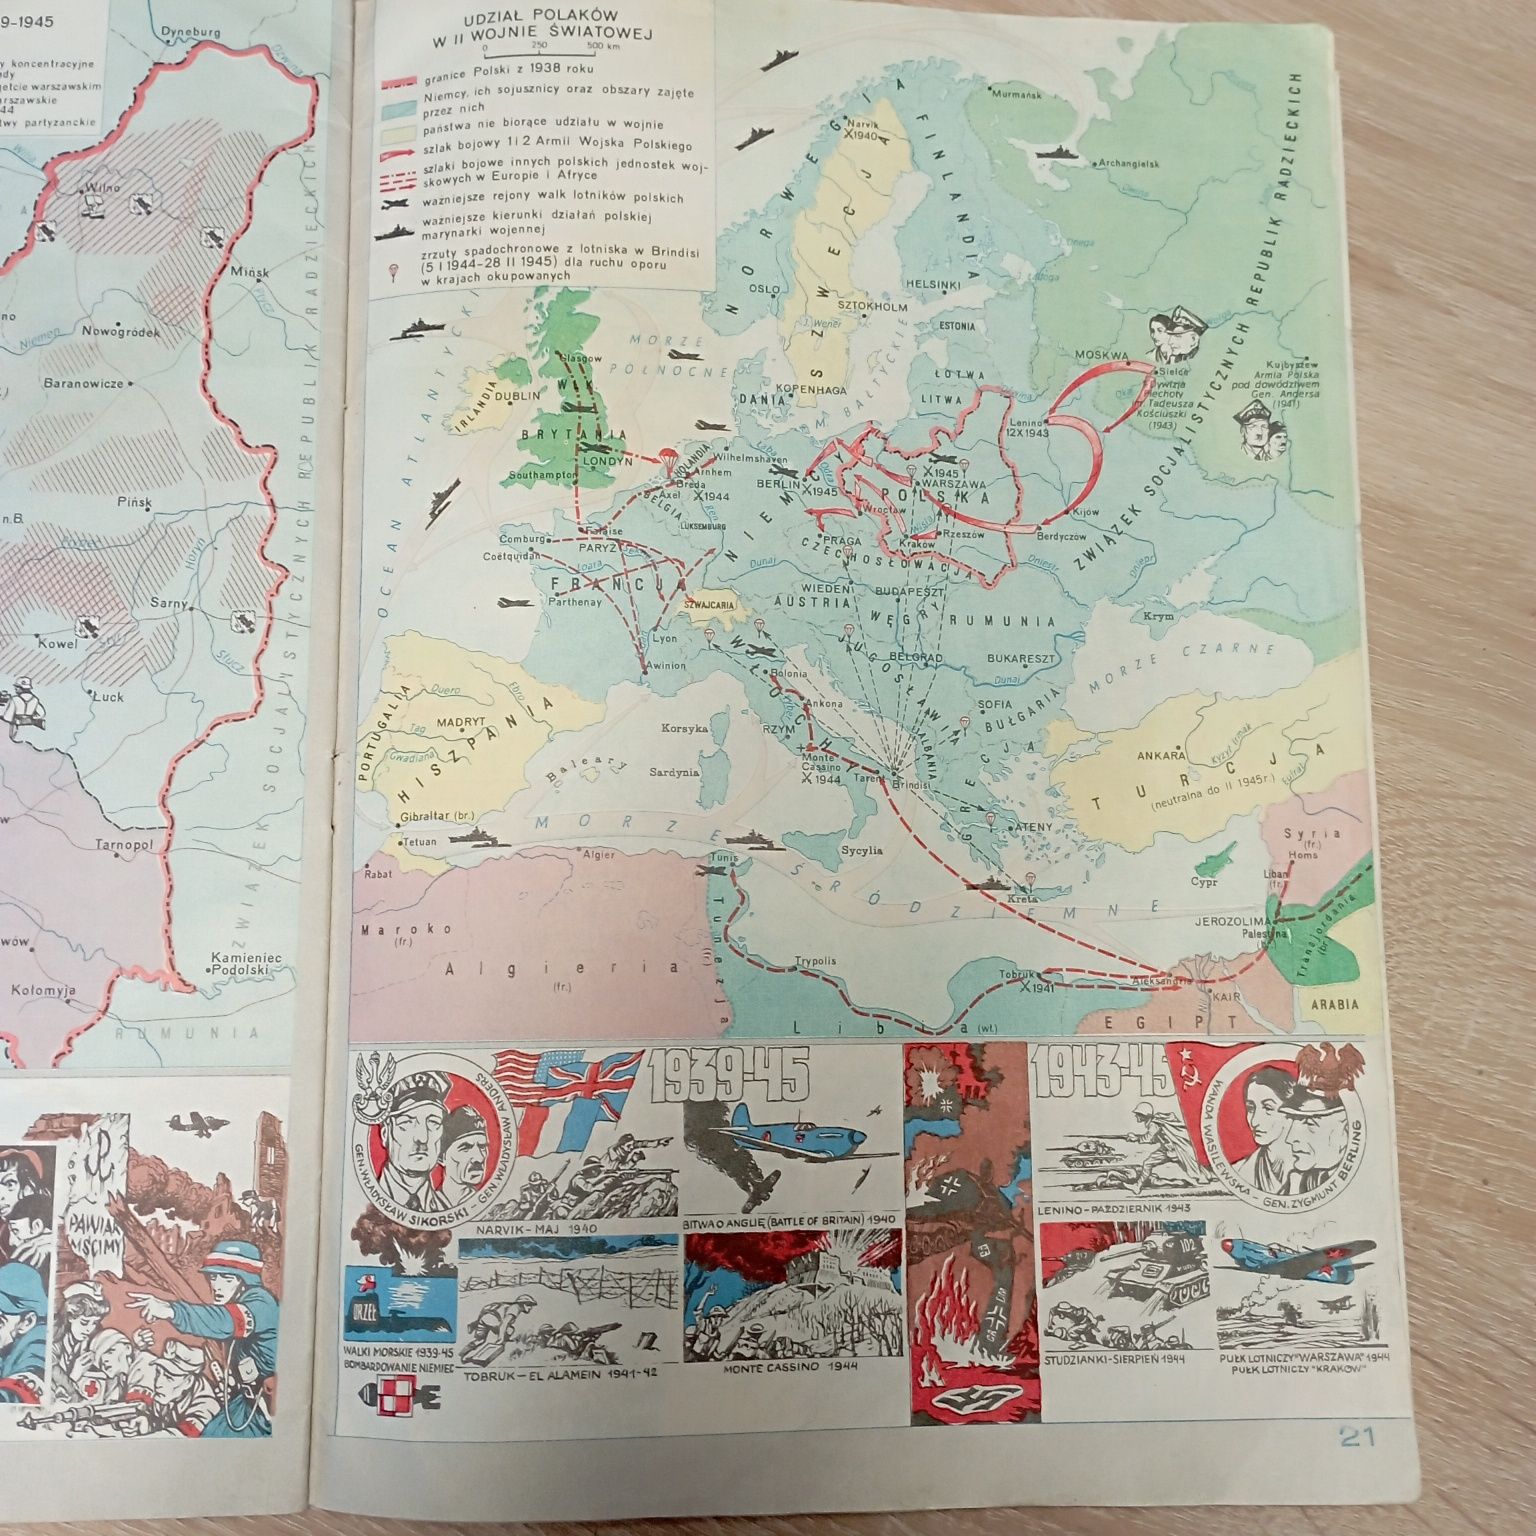 Nasza Ojczyzna szkolny atlas historyczny, 1987 
Rok wydania 1987
szkol